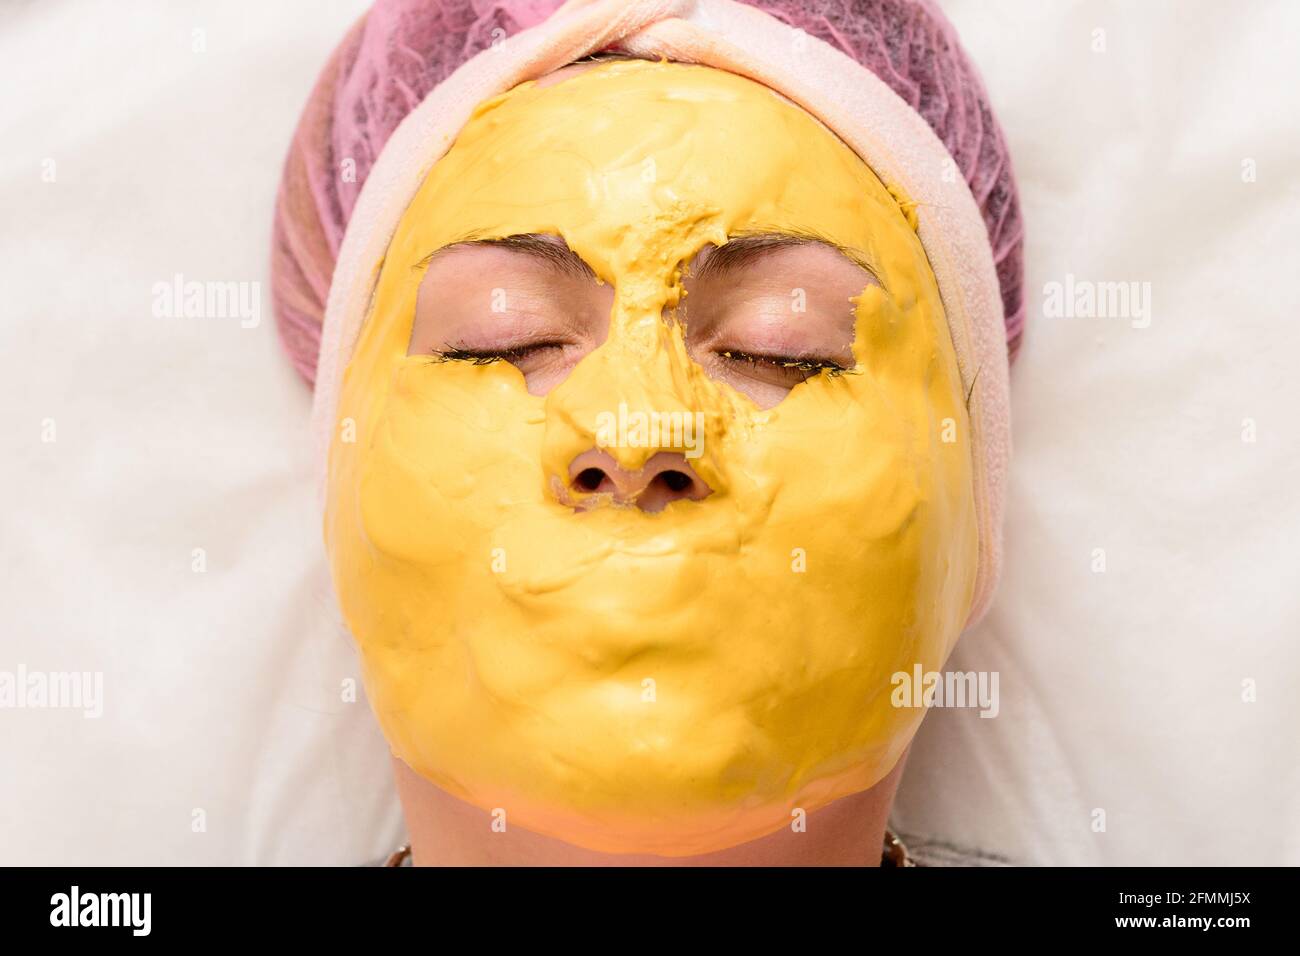 La maschera d'oro copre tutto il viso tranne gli occhi, una maschera per  ripristinare, idratare e ringiovanire la pelle. Nuovo Foto stock - Alamy